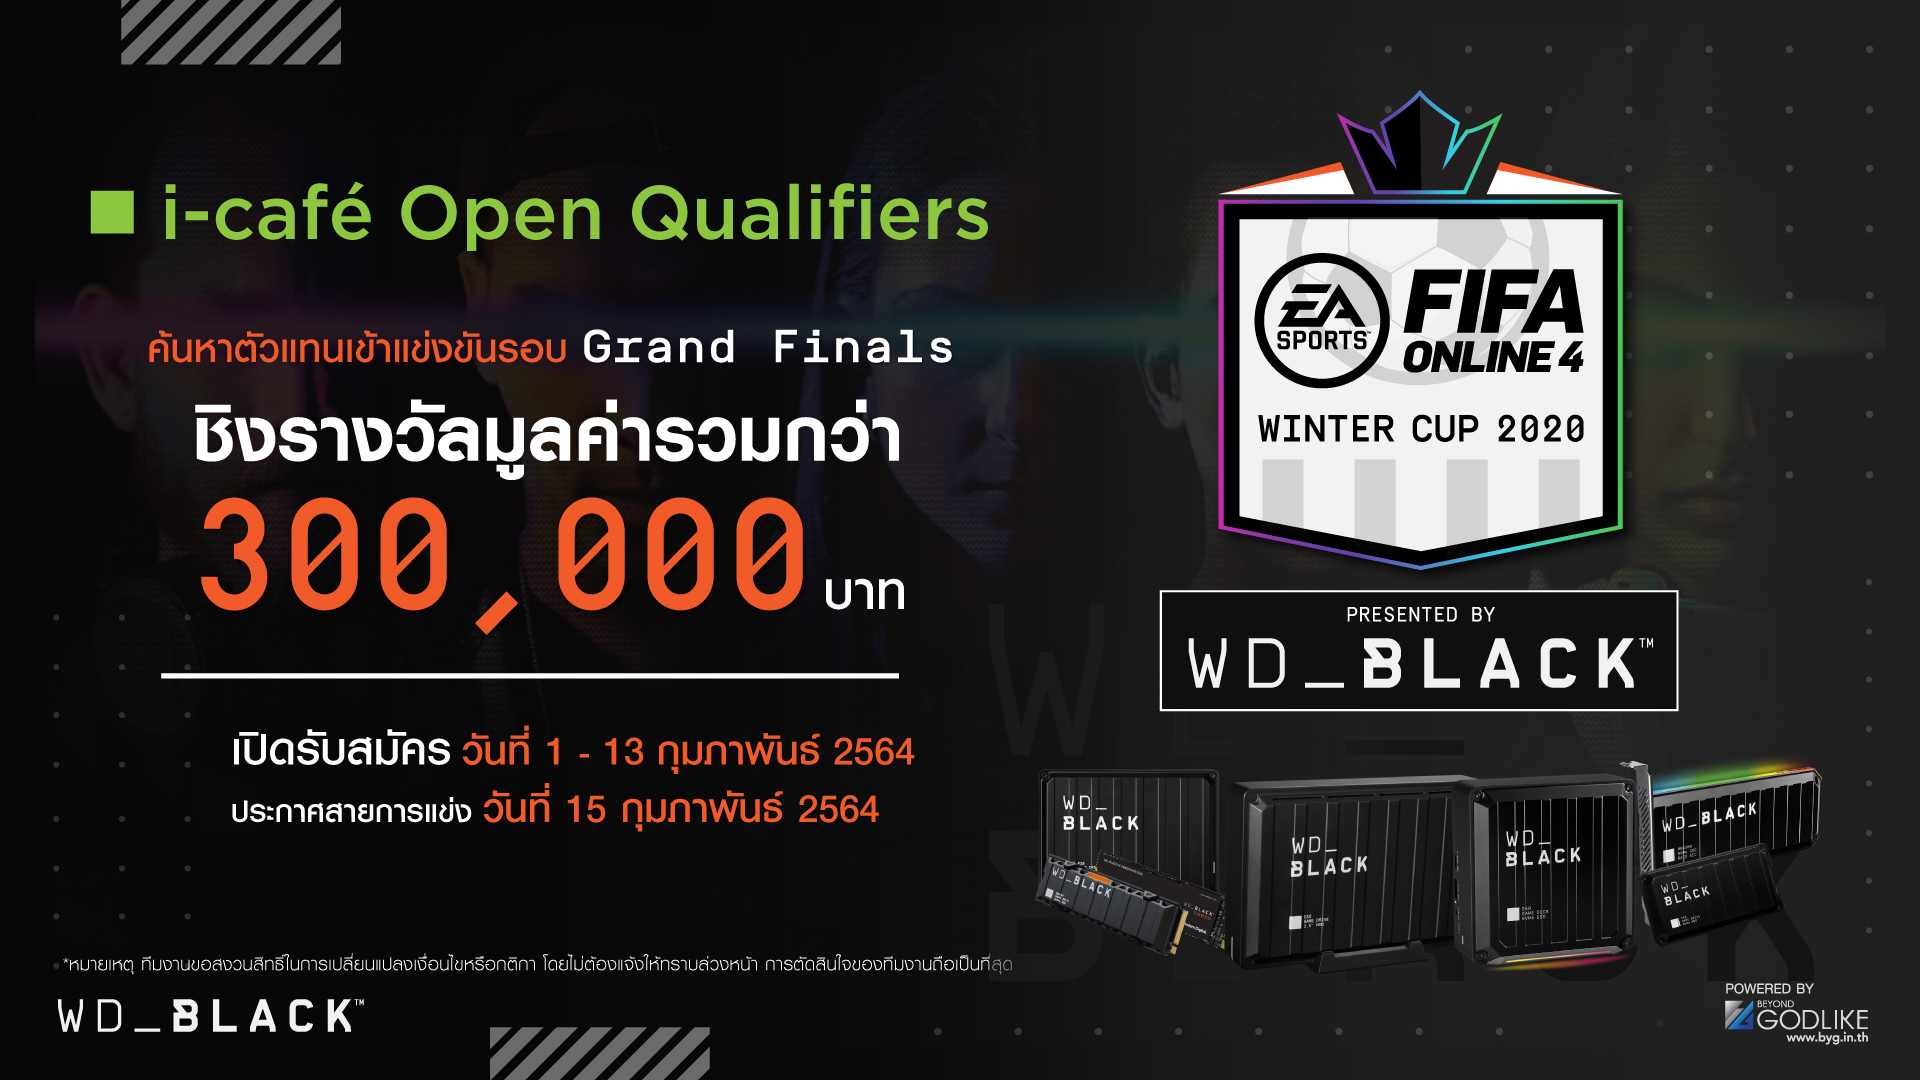 เปิดรับสมัครรอบ i-café Open Qualifiers ค้นหาตัวแทนร้านไปแข่งขันรอบ Grand Finals ในรายการ FIFA Online 4 Thailand Winter Cup 2020 presented by WD_BLACK ชิงรางวัลมูลค่ารวมกว่า 300,000 บาท